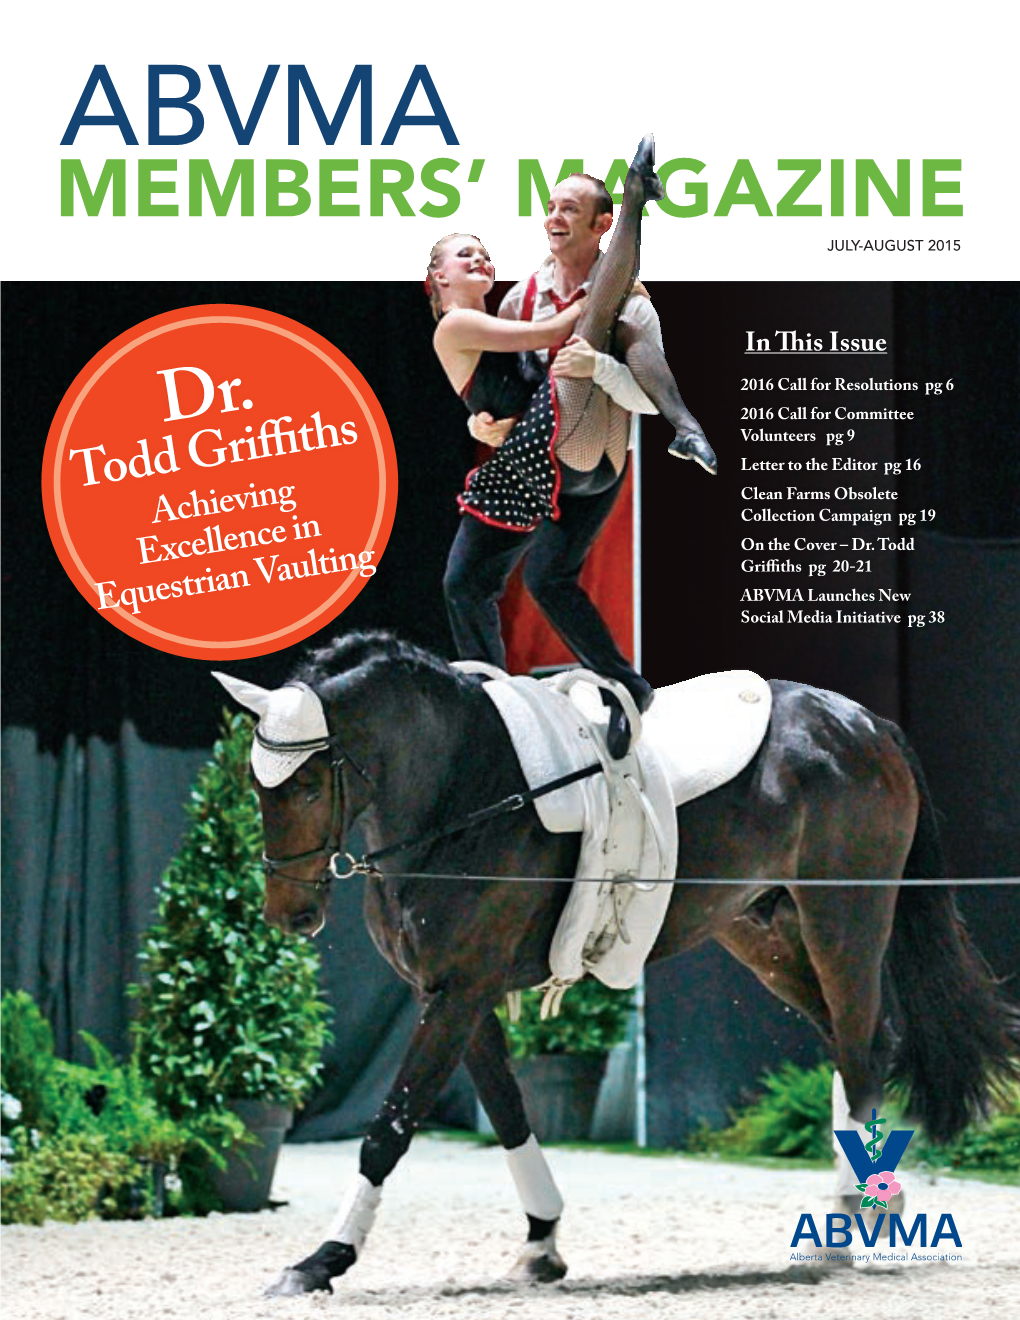 2015 Members' Magazine